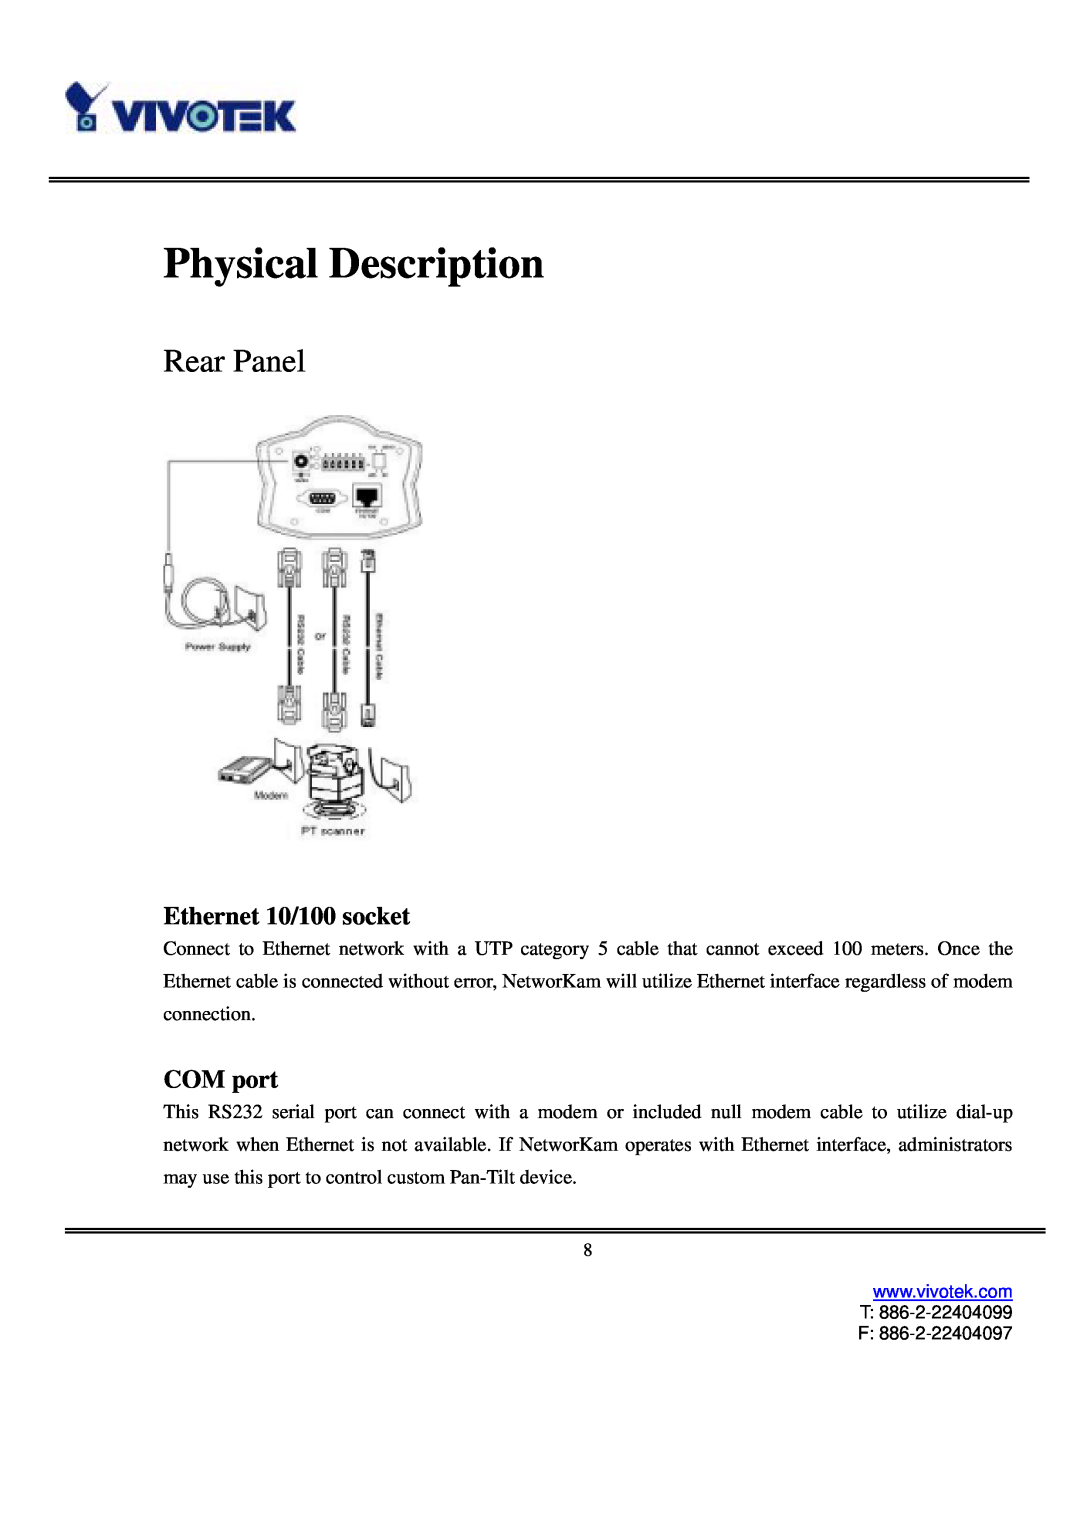 Vivotek IP3111/IP3121 user manual Physical Description, Rear Panel, Ethernet 10/100 socket, COM port 